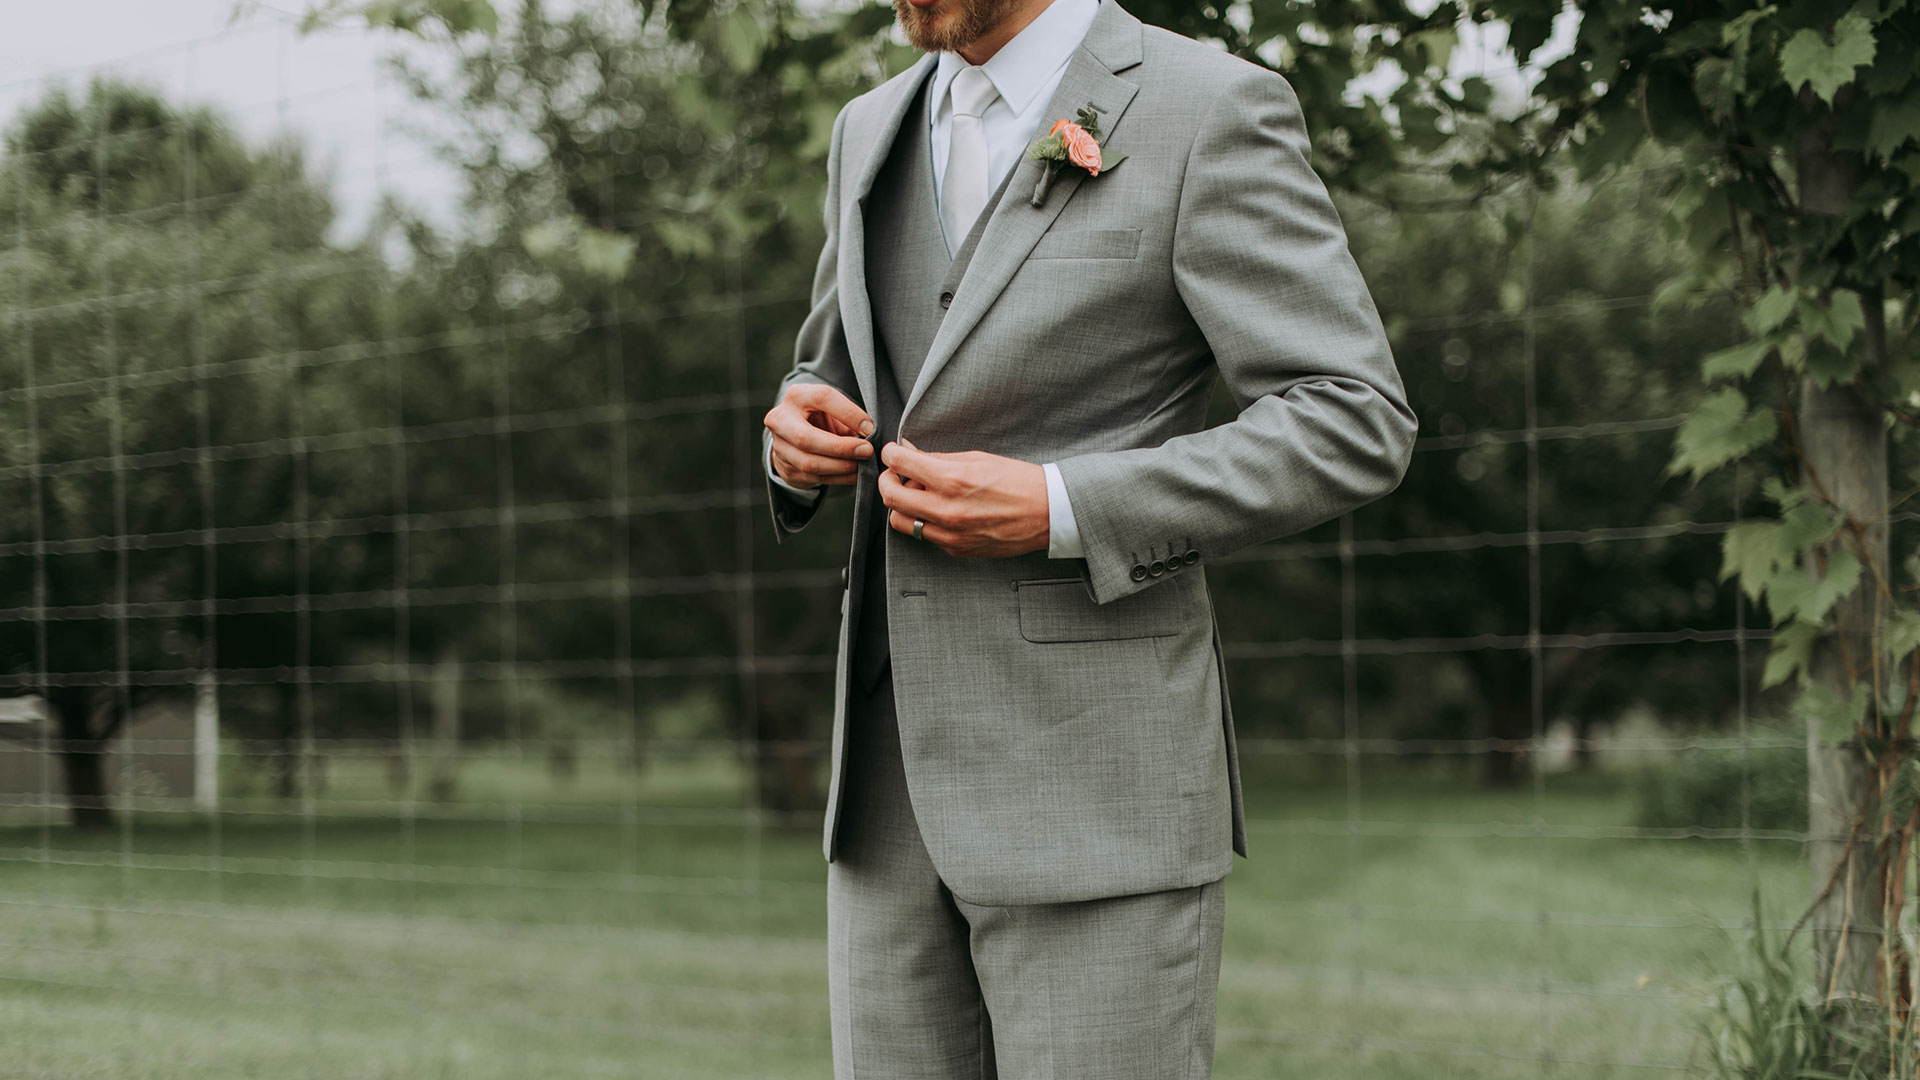 Decálogo para vestir de forma adecuada en una boda | The Luxonomist